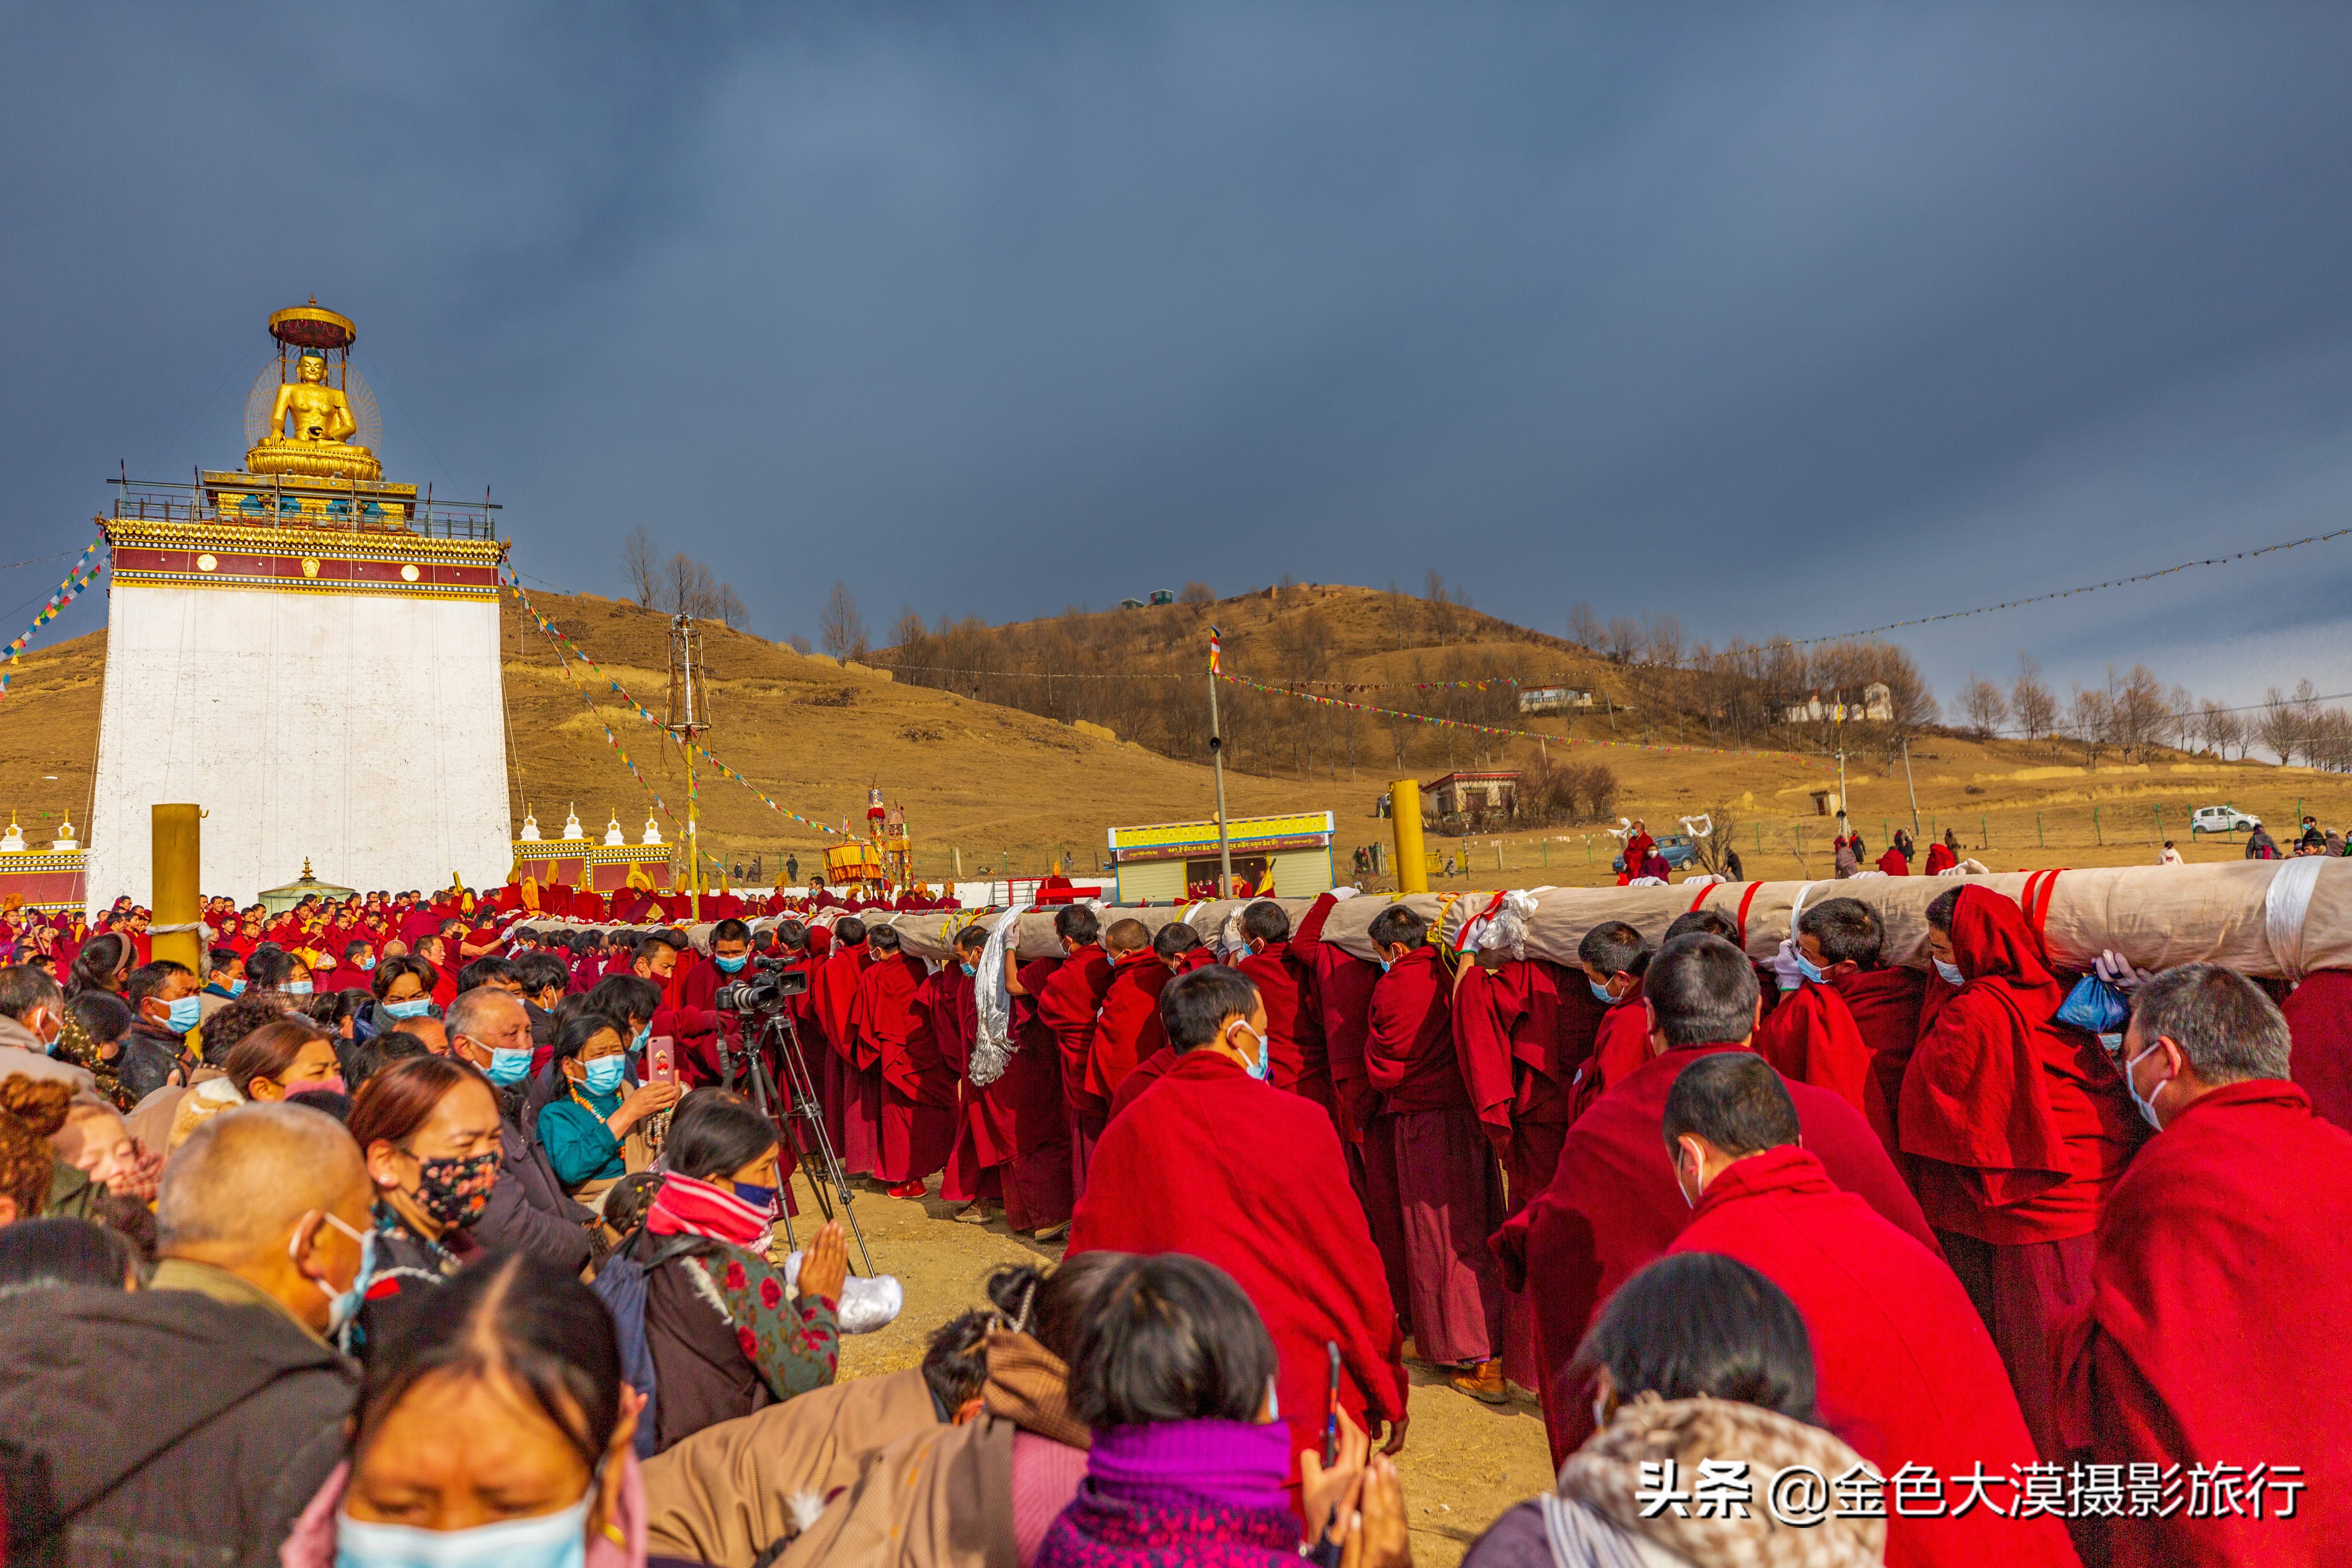 阿坝旅游摄影2022年莫郎节盛大的民俗宗教文化活动格尔登寺纪实